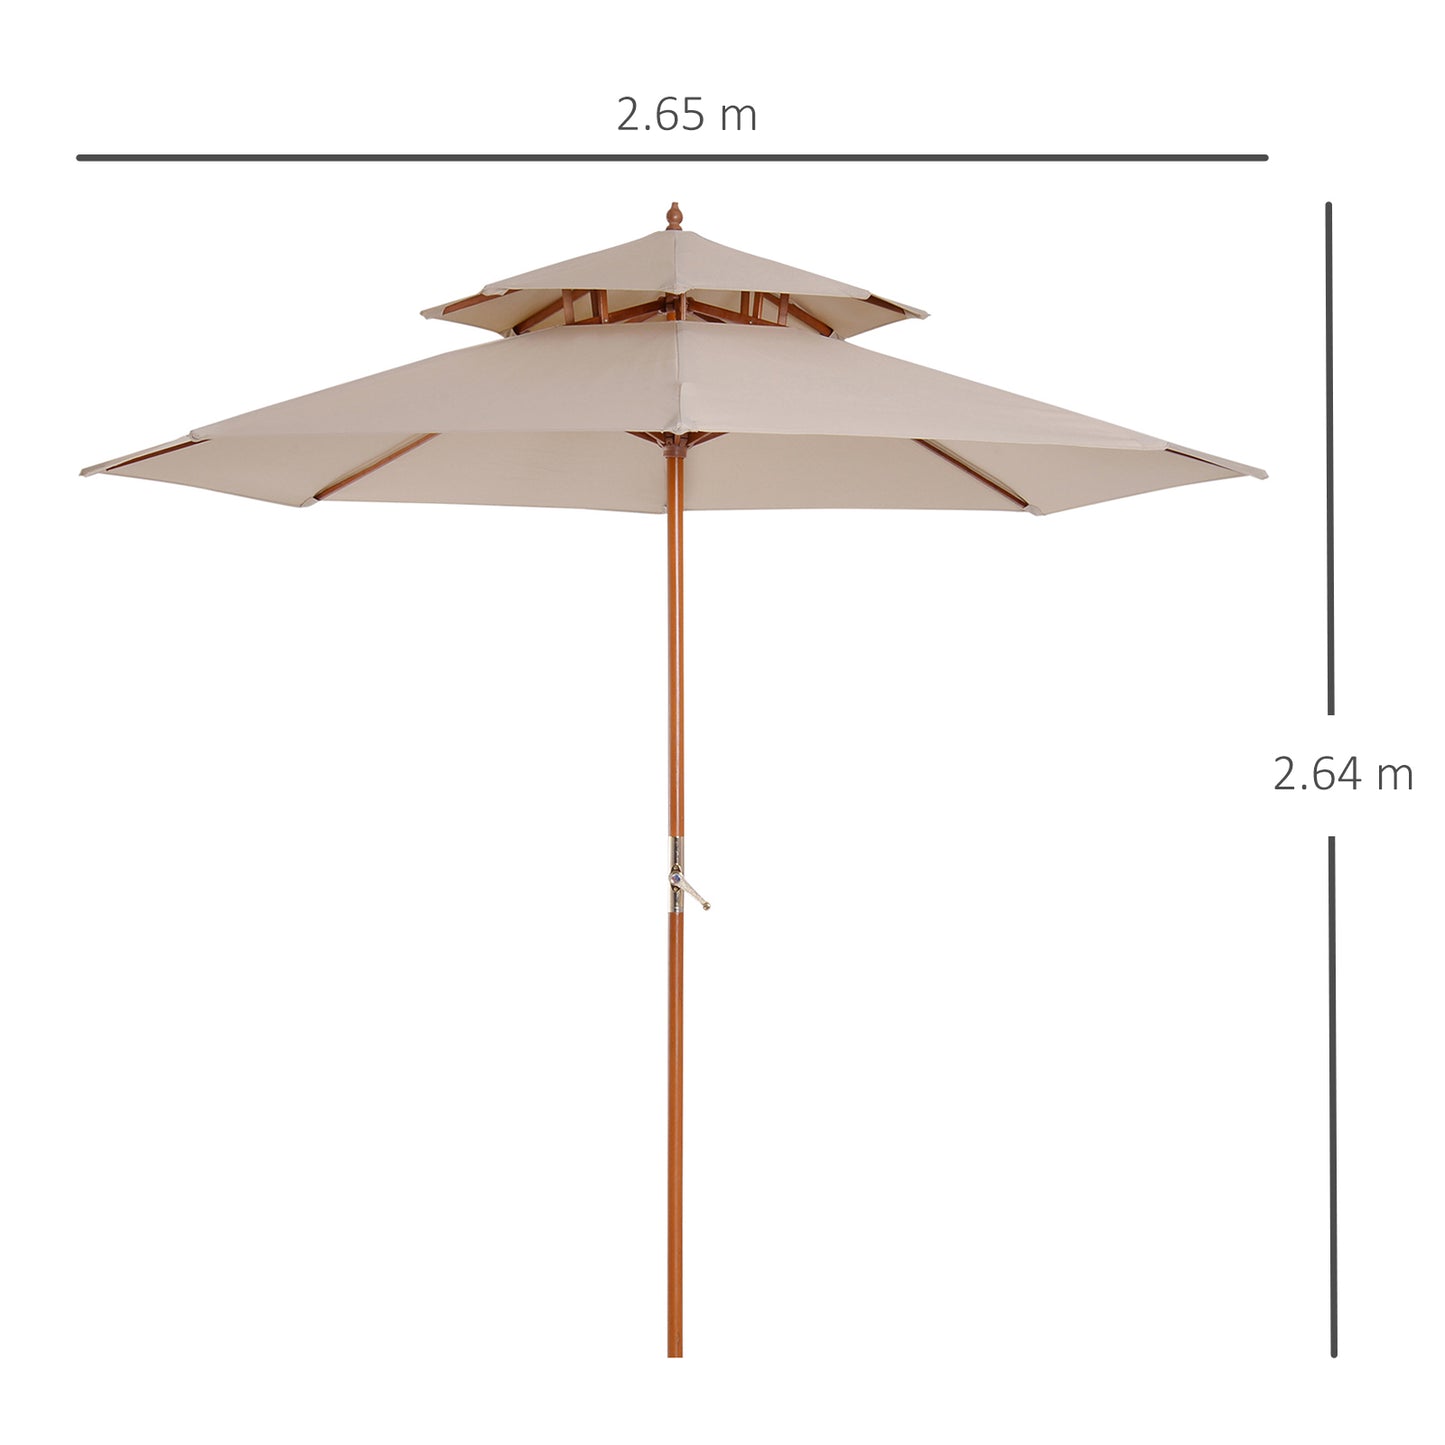 Outsunny 2.7m Patio Double Tier Umbrella Parasol Canopy Garden Sun Sunshade -Beige